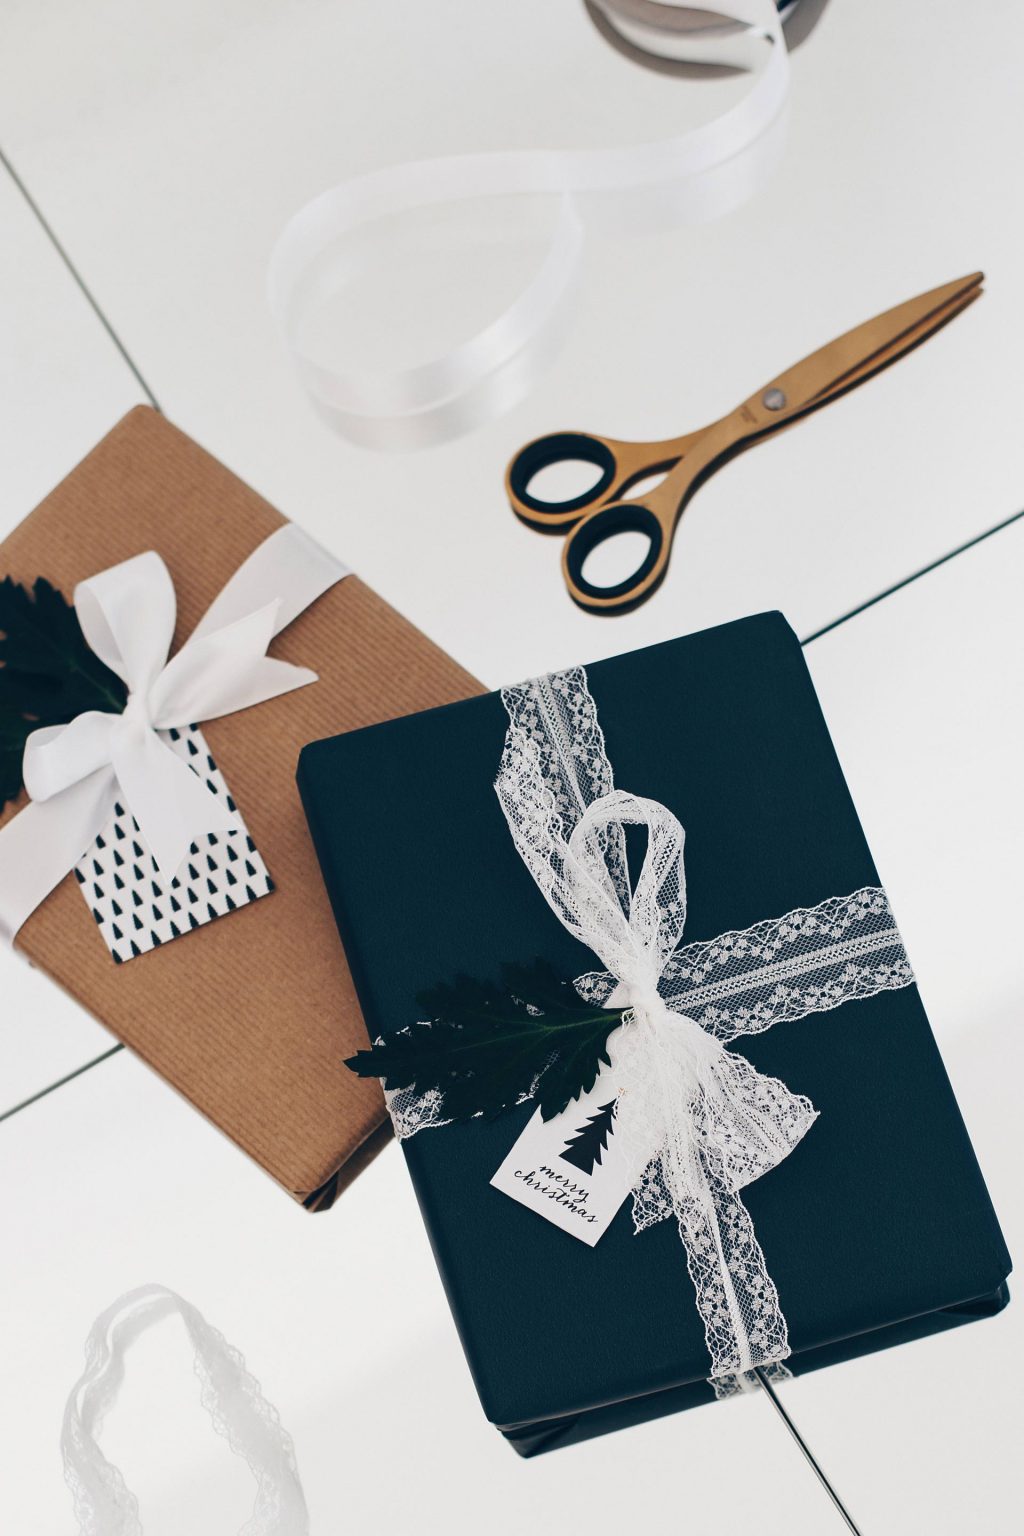 Einfache Und Kreative Geschenkverpackungen Für Weihnachten Selber Machen Life Und Style Blog 2844